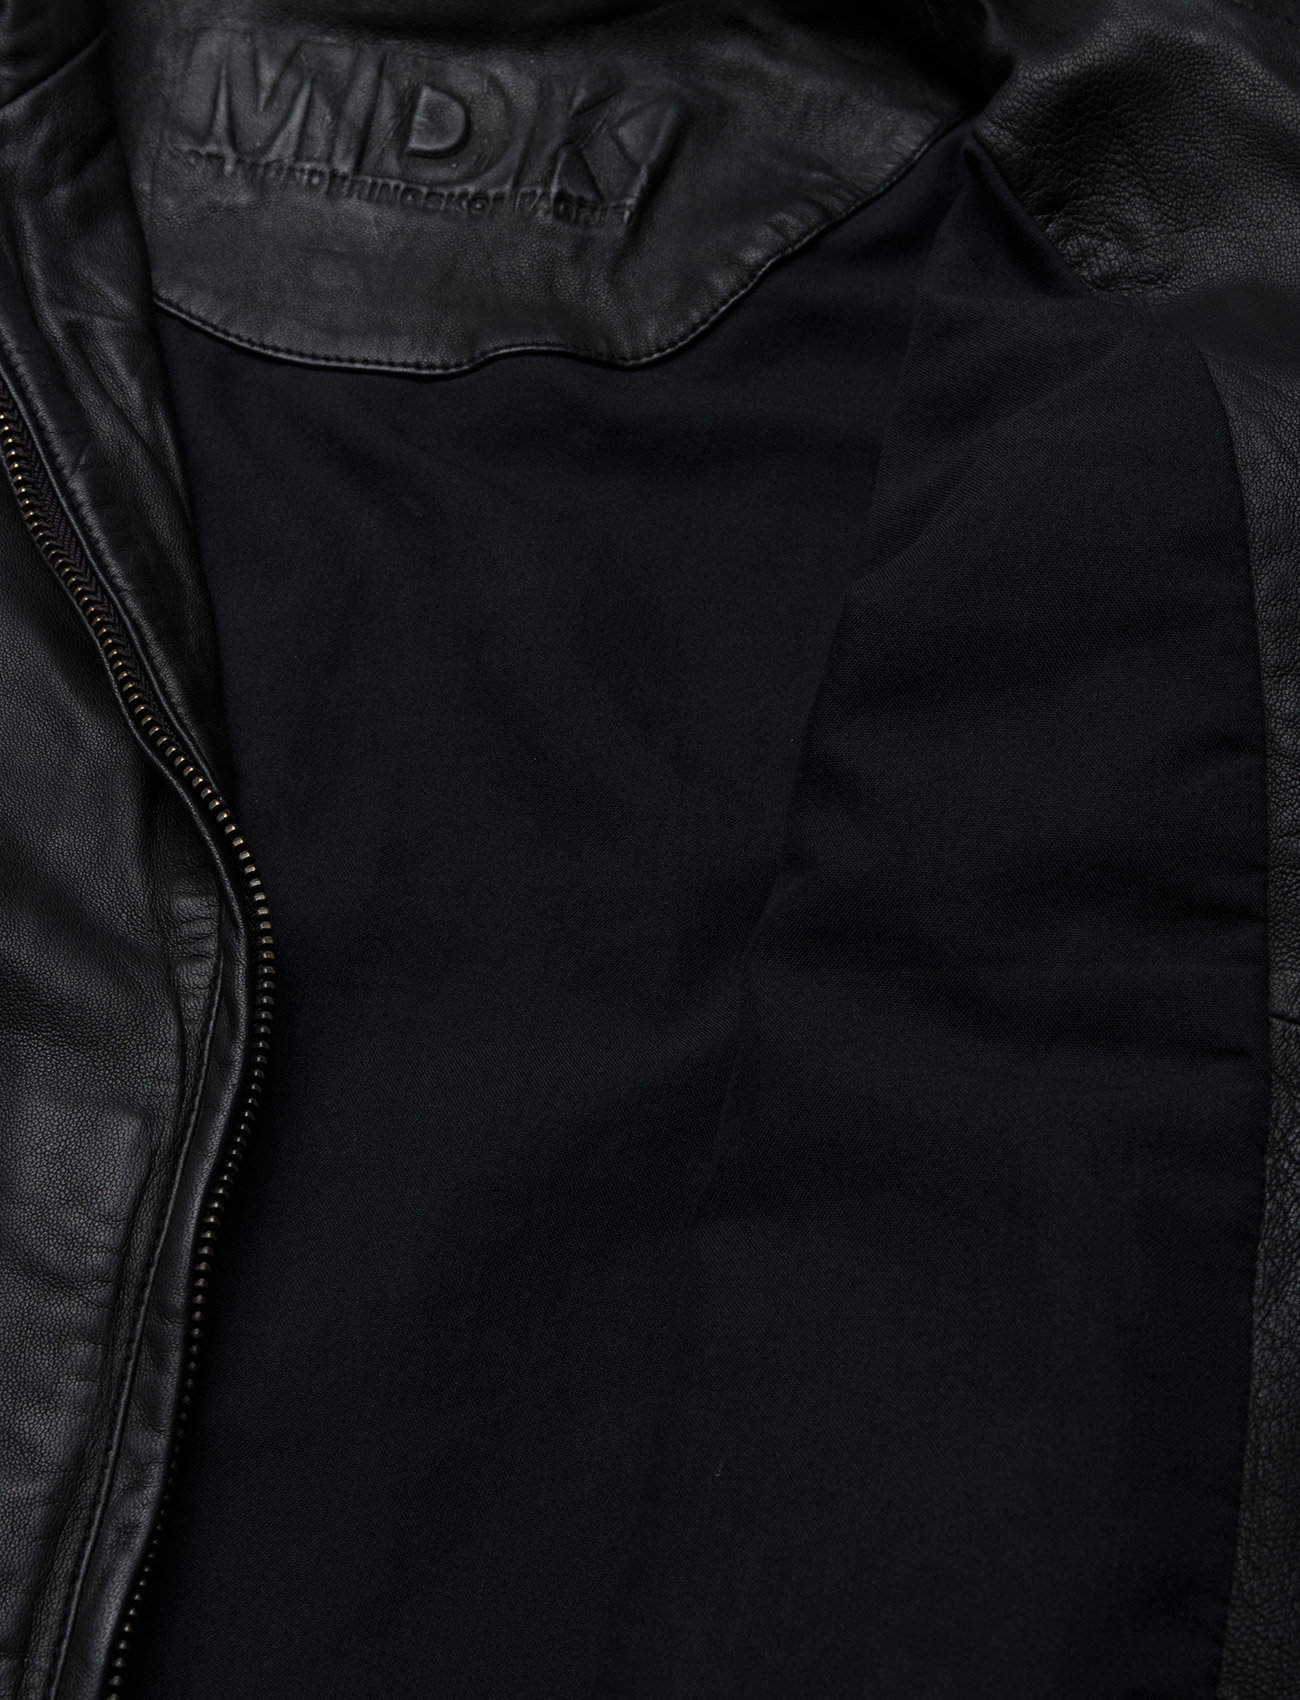 modbydeligt grundigt sø MDK Karla Leather Jacket (Black), 999.50 kr | Stort udvalg af designer  mærker | Booztlet.com